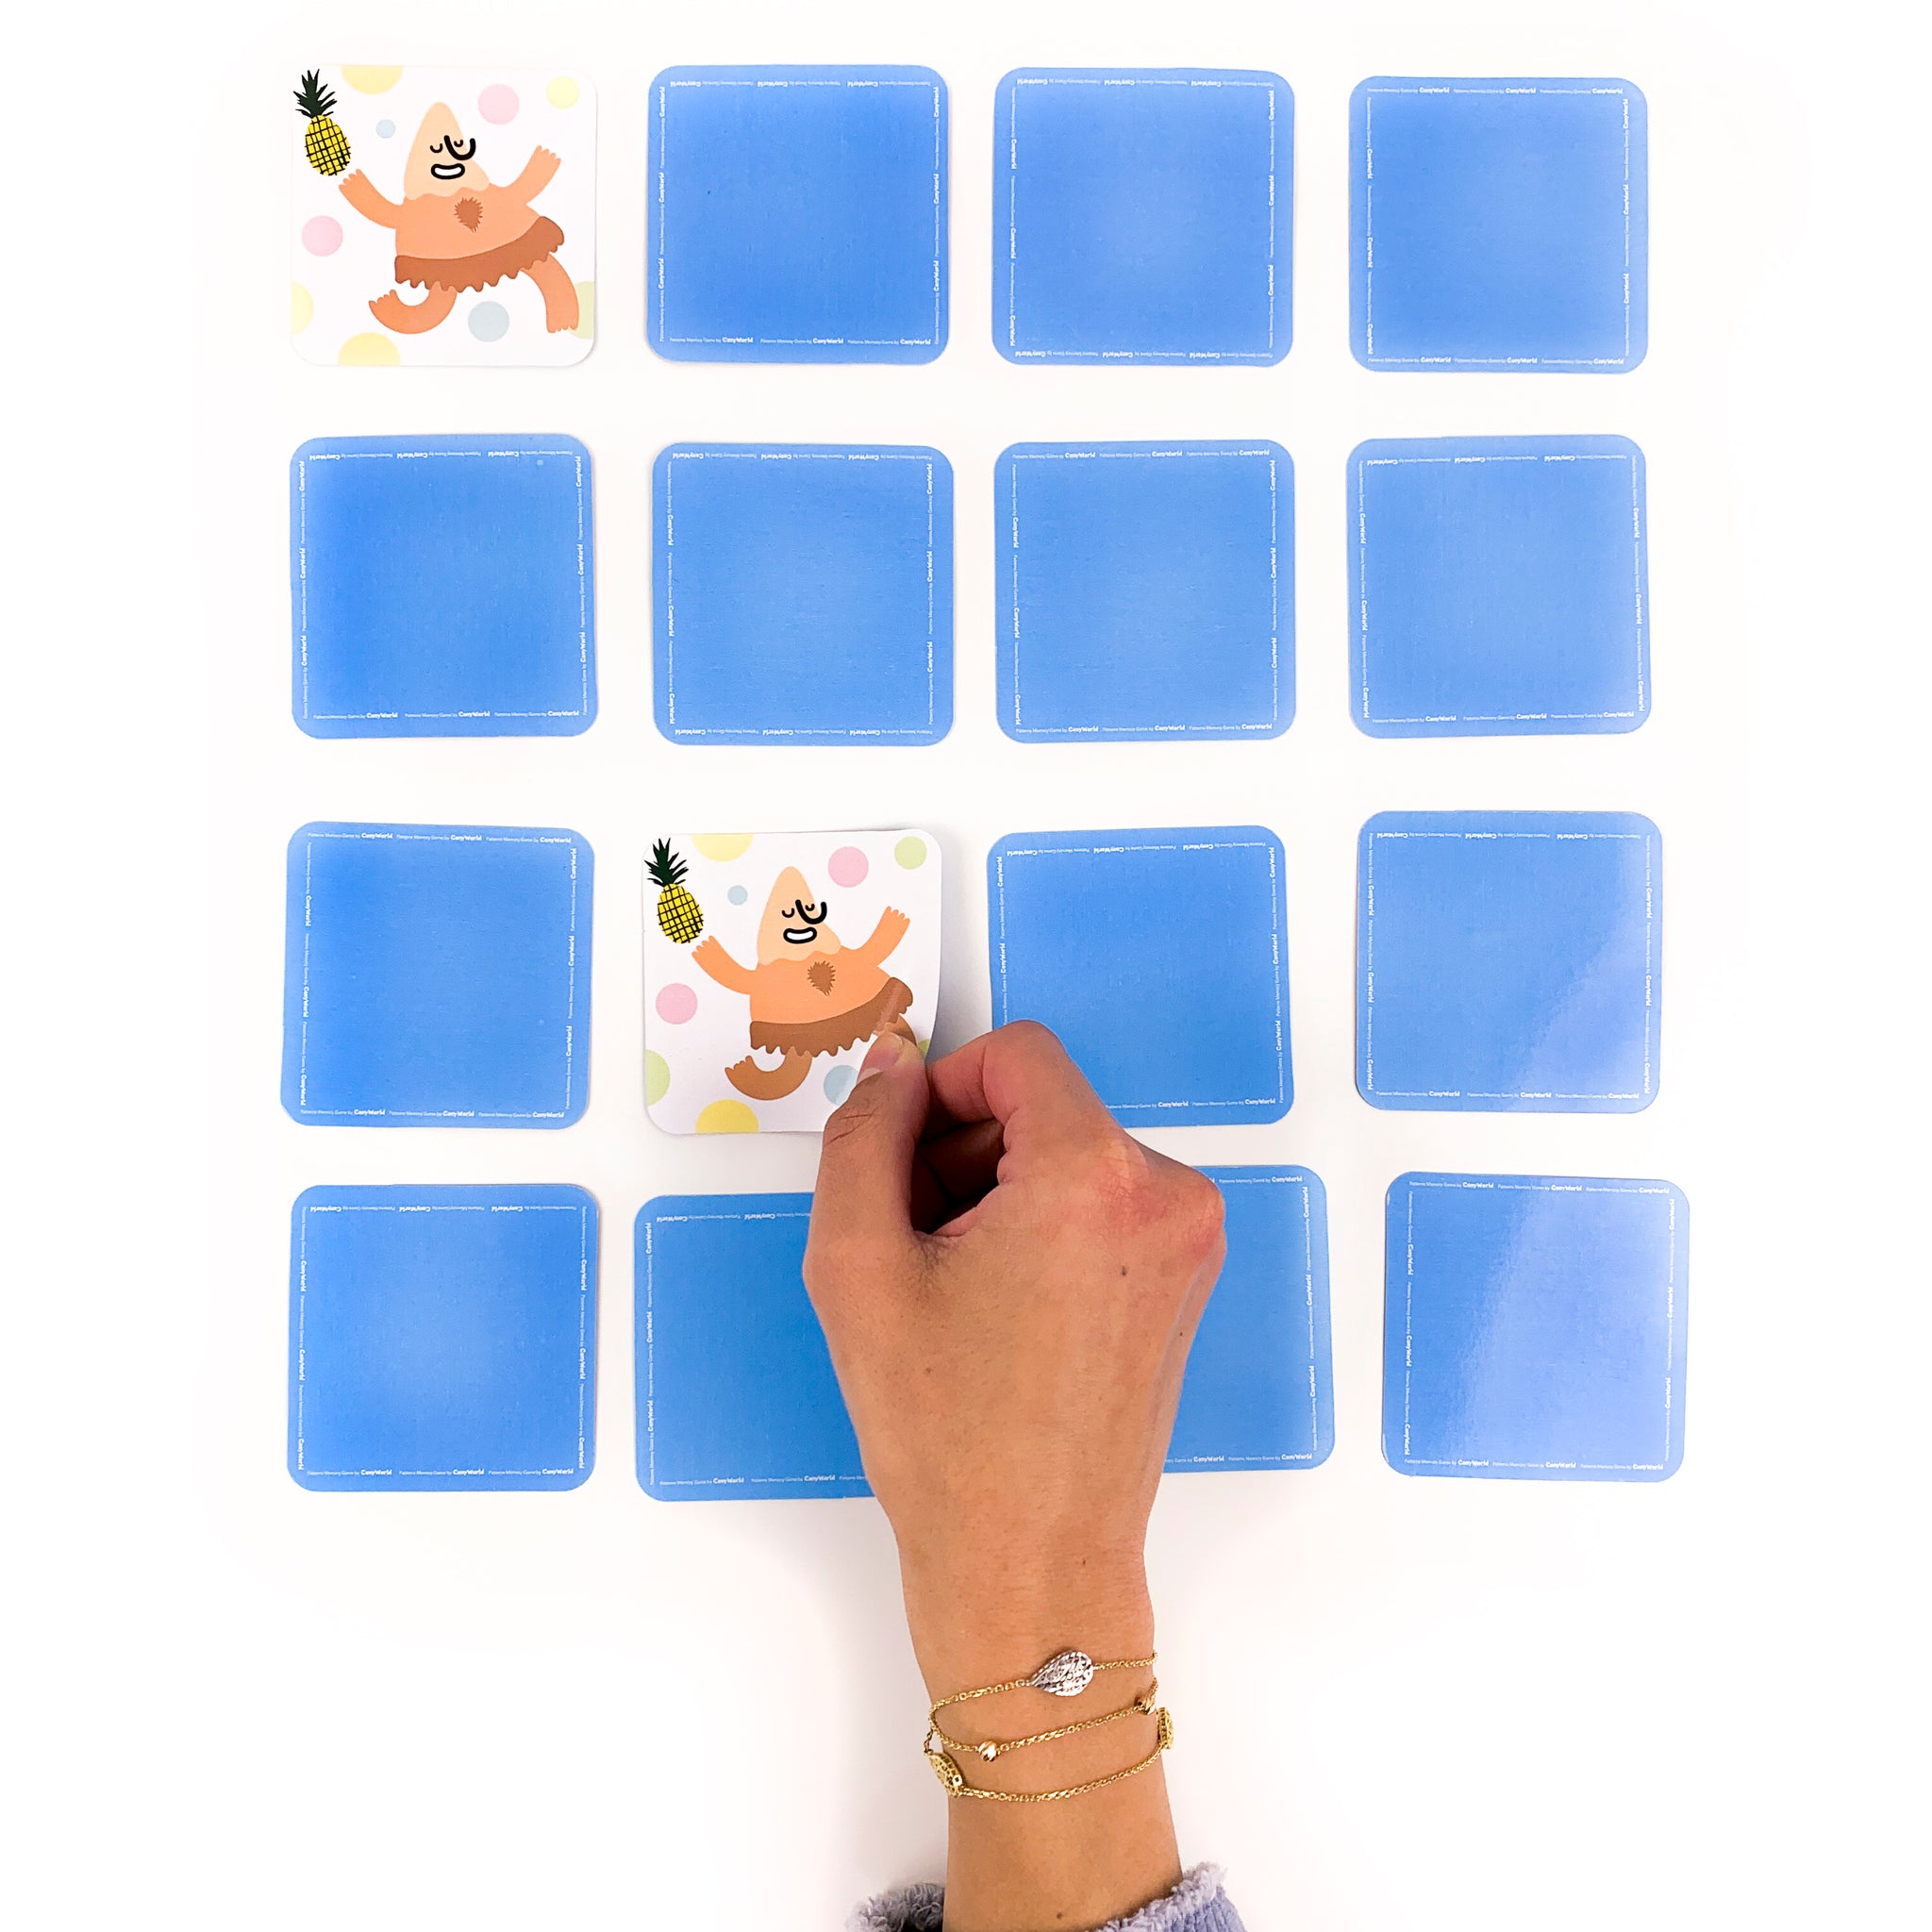 Patterns (Memory Game) - (الأنماط (لعبة ذاكرة